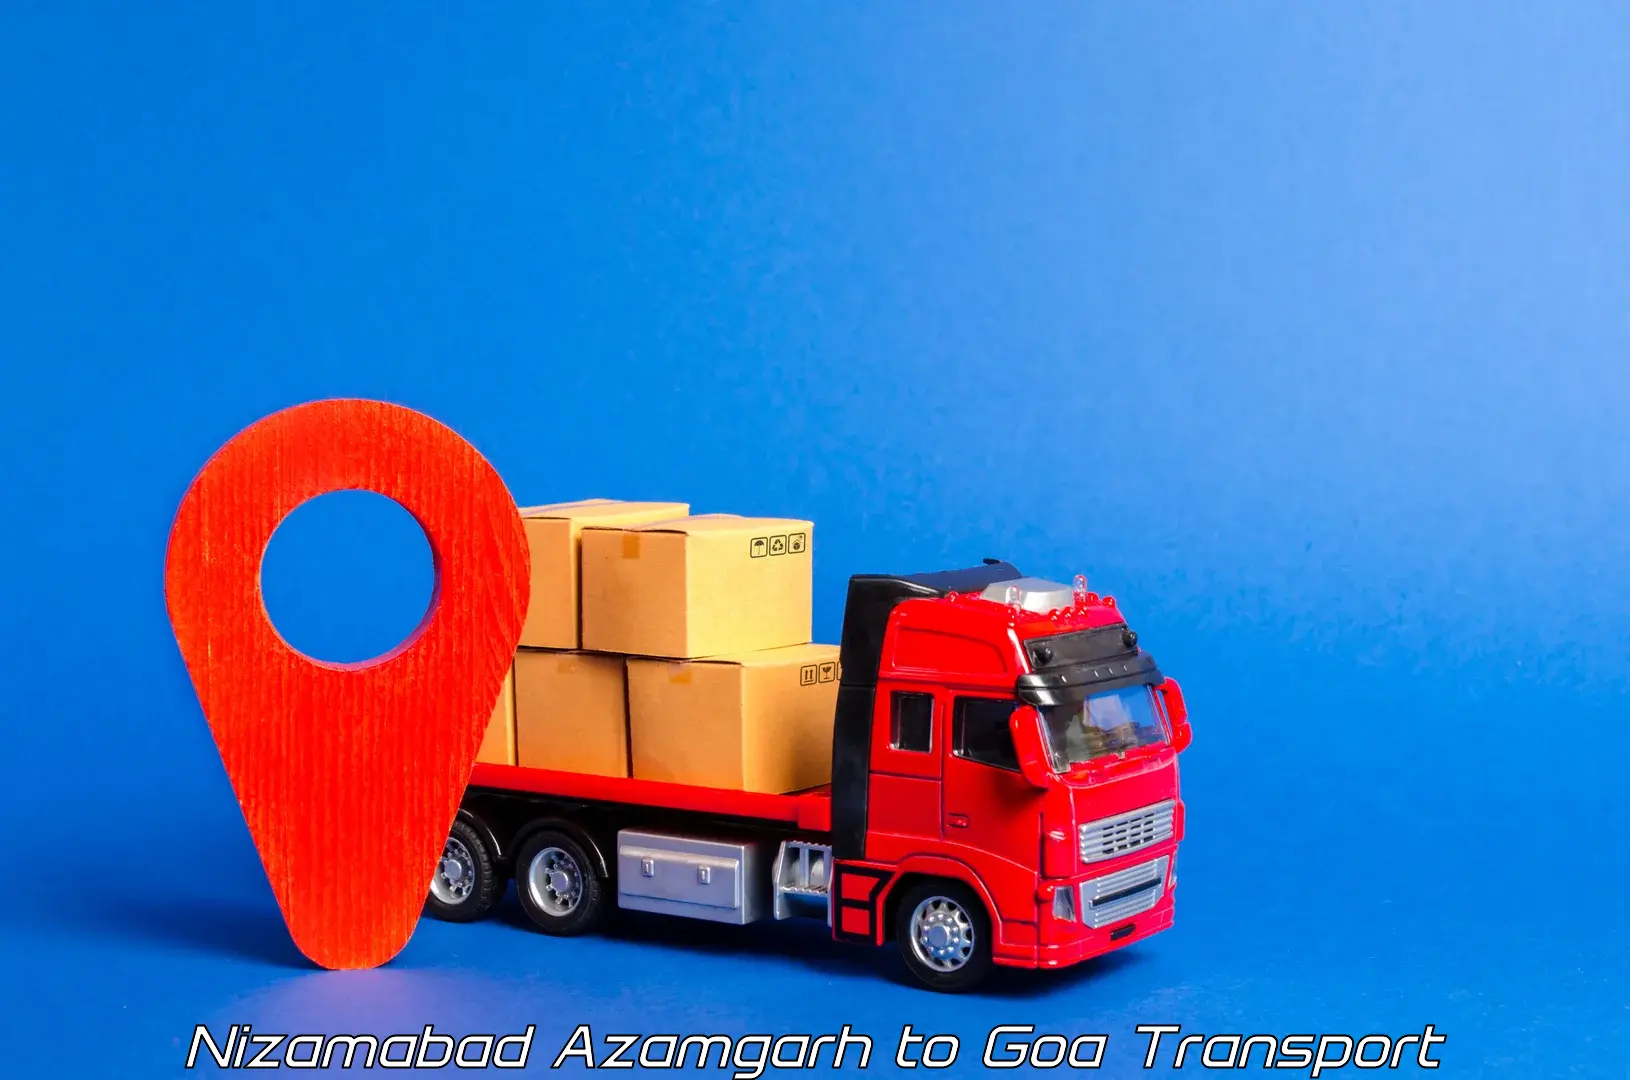 Vehicle courier services Nizamabad Azamgarh to Goa University